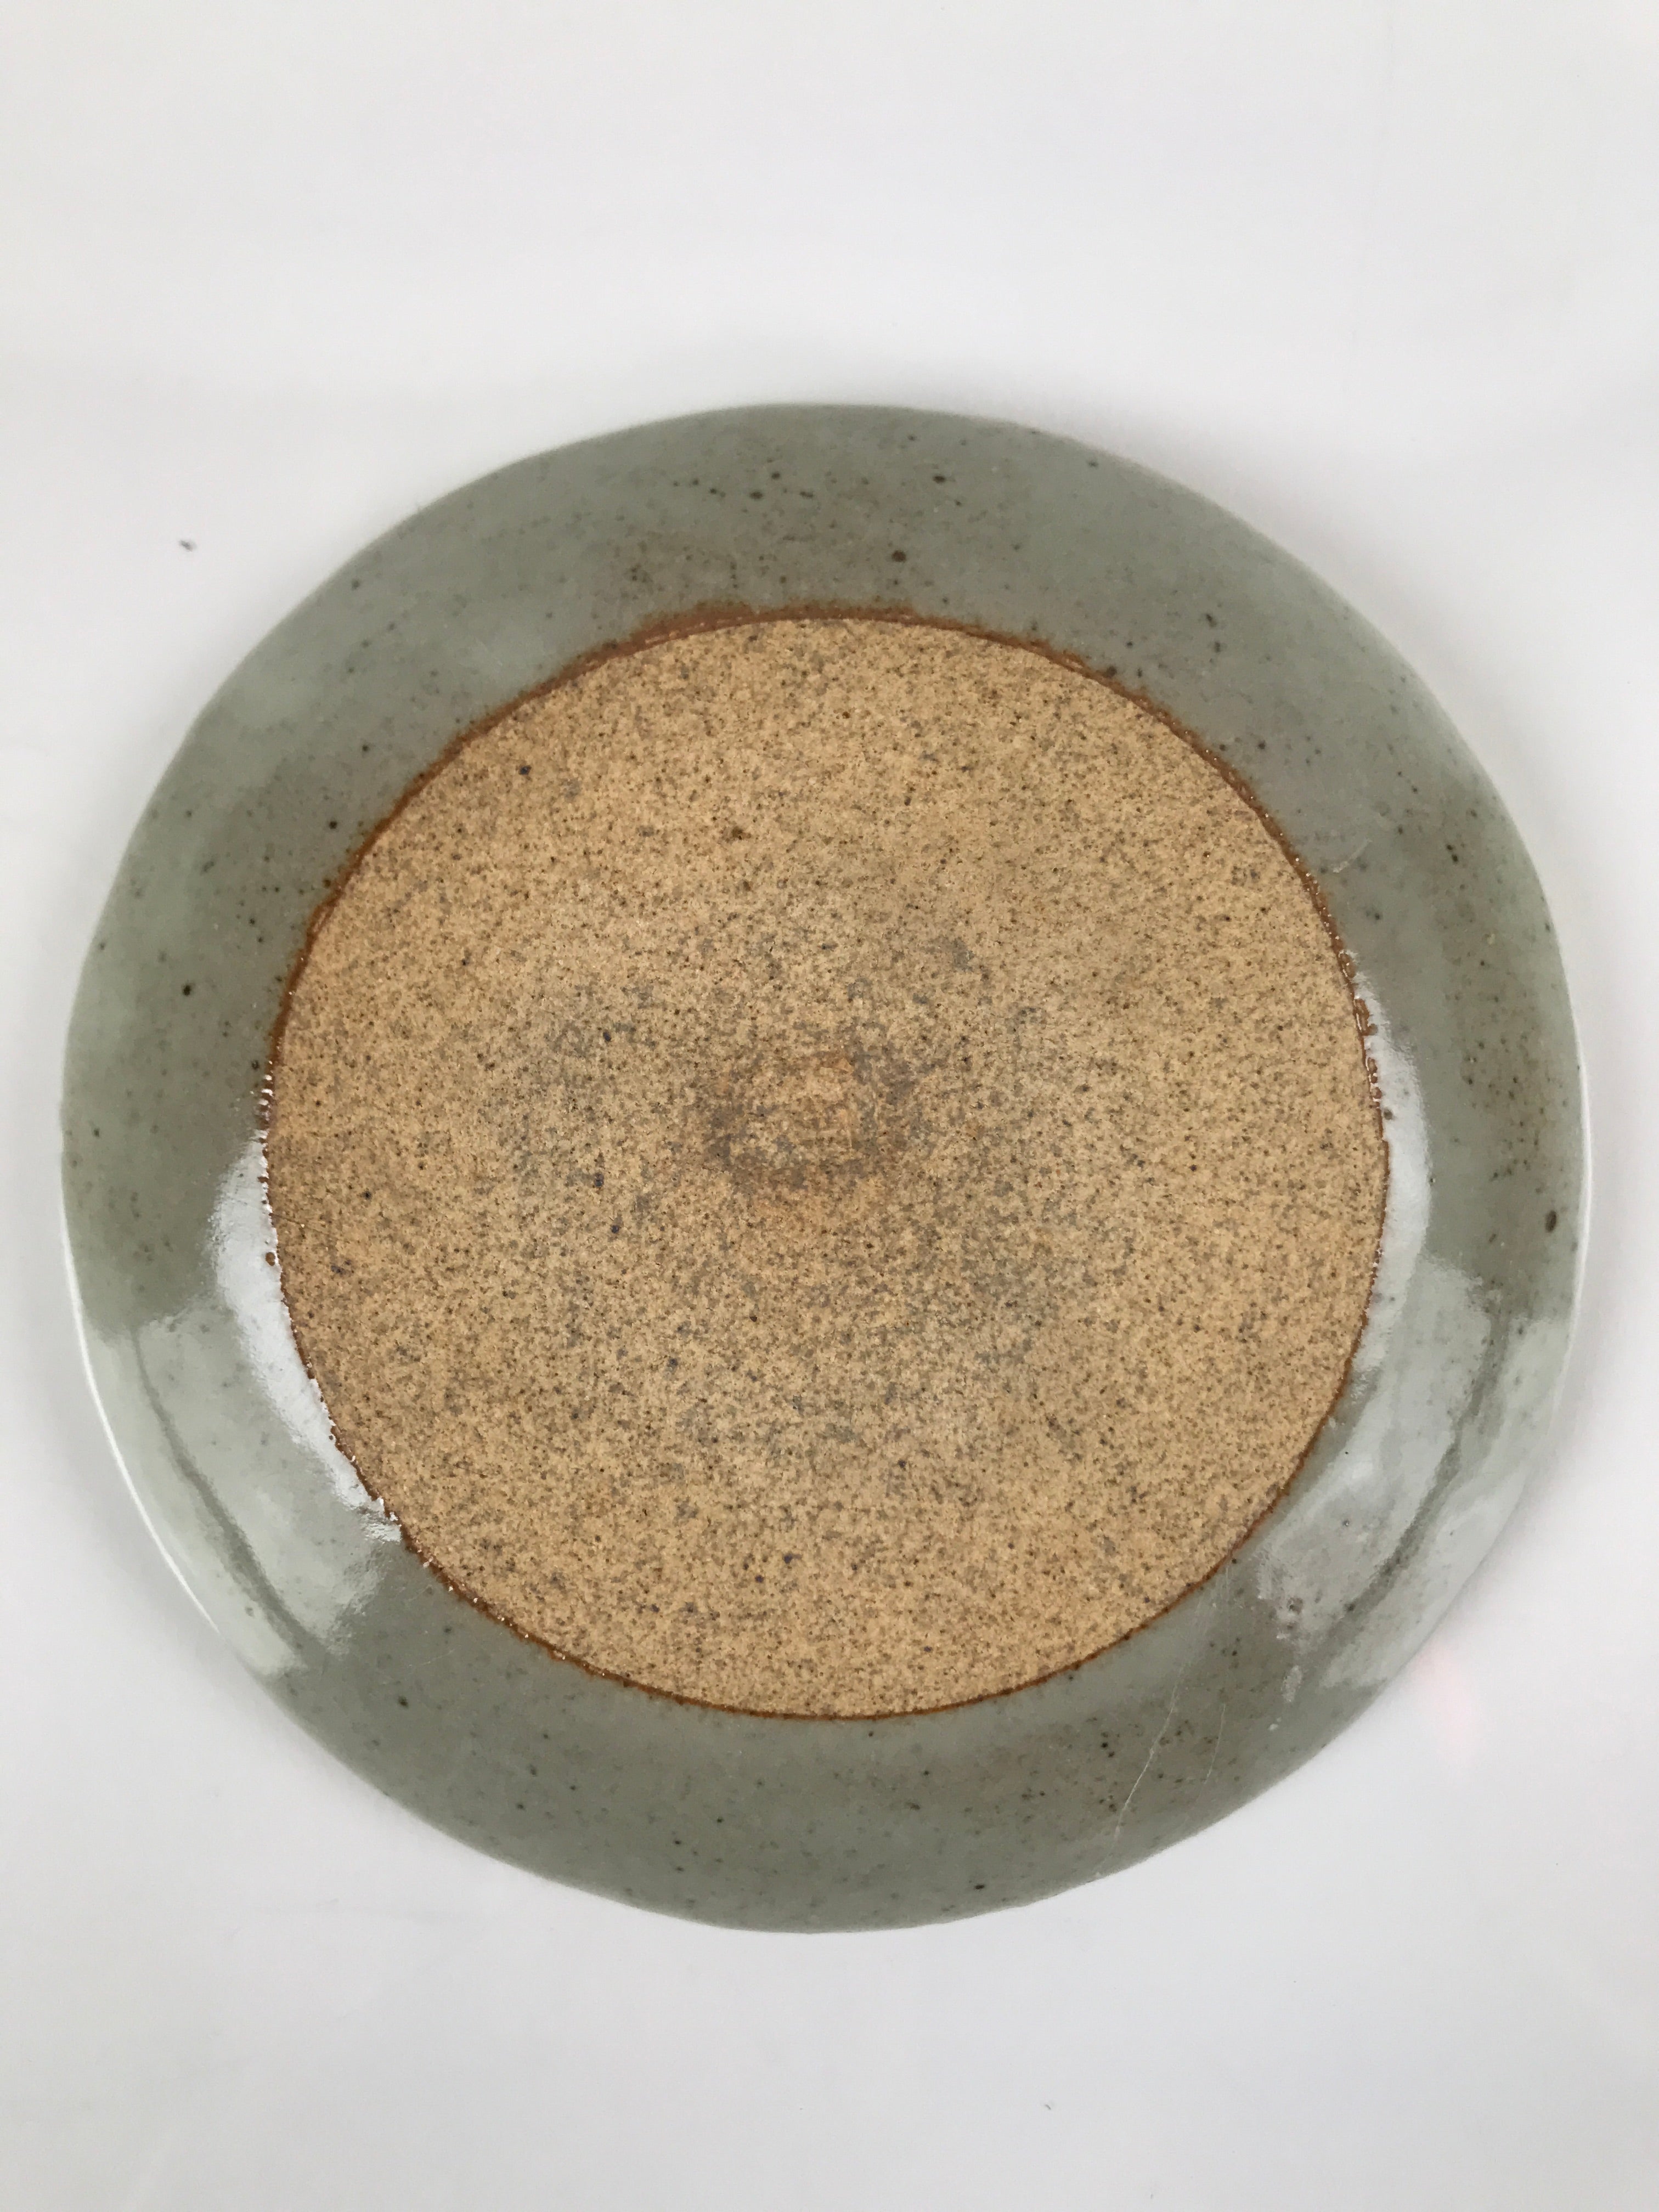 Japanese Ceramic Small Plate Meimeizara Kozara Vtg Dragonfly Tonbo Blue PY709